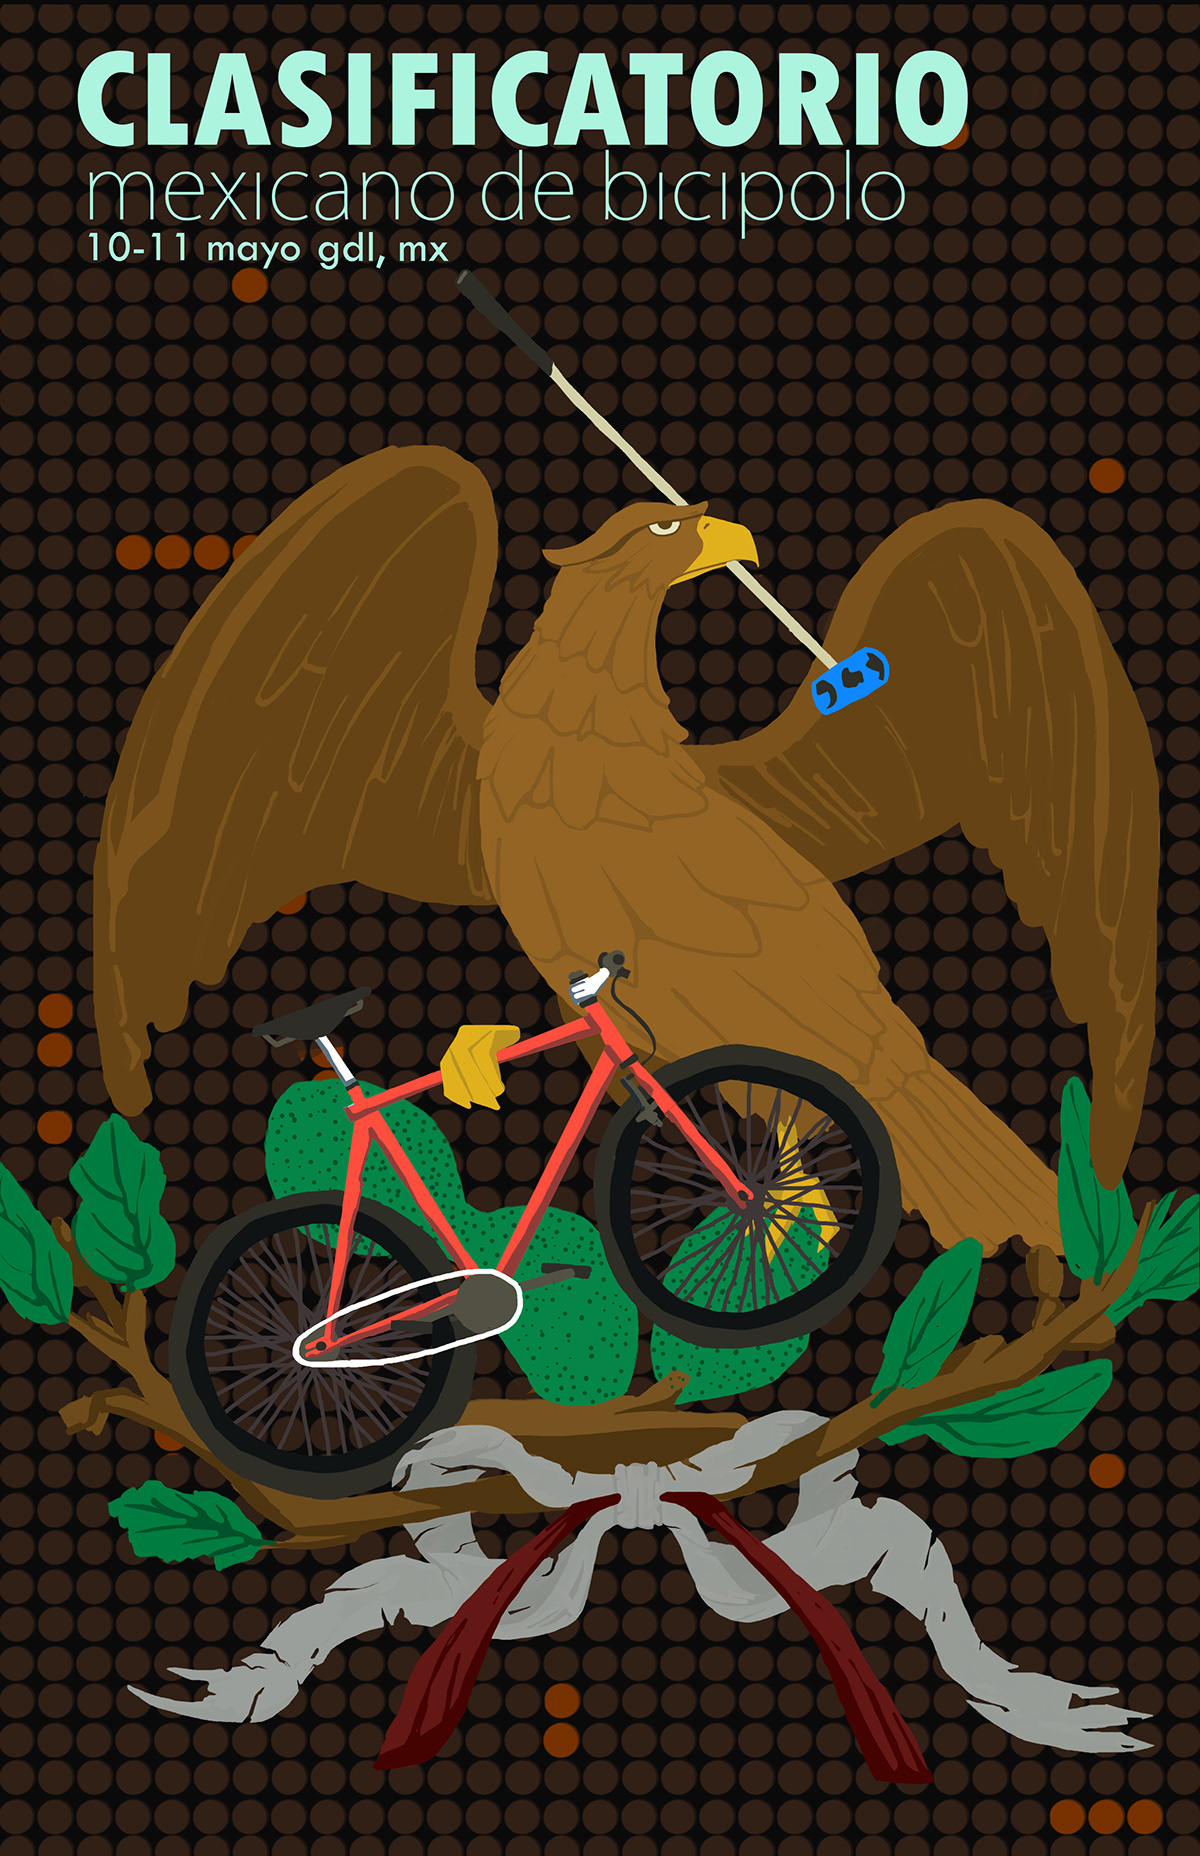 poster design draw YAIRS calificatorio Bicipolo mexico colors bikepolo